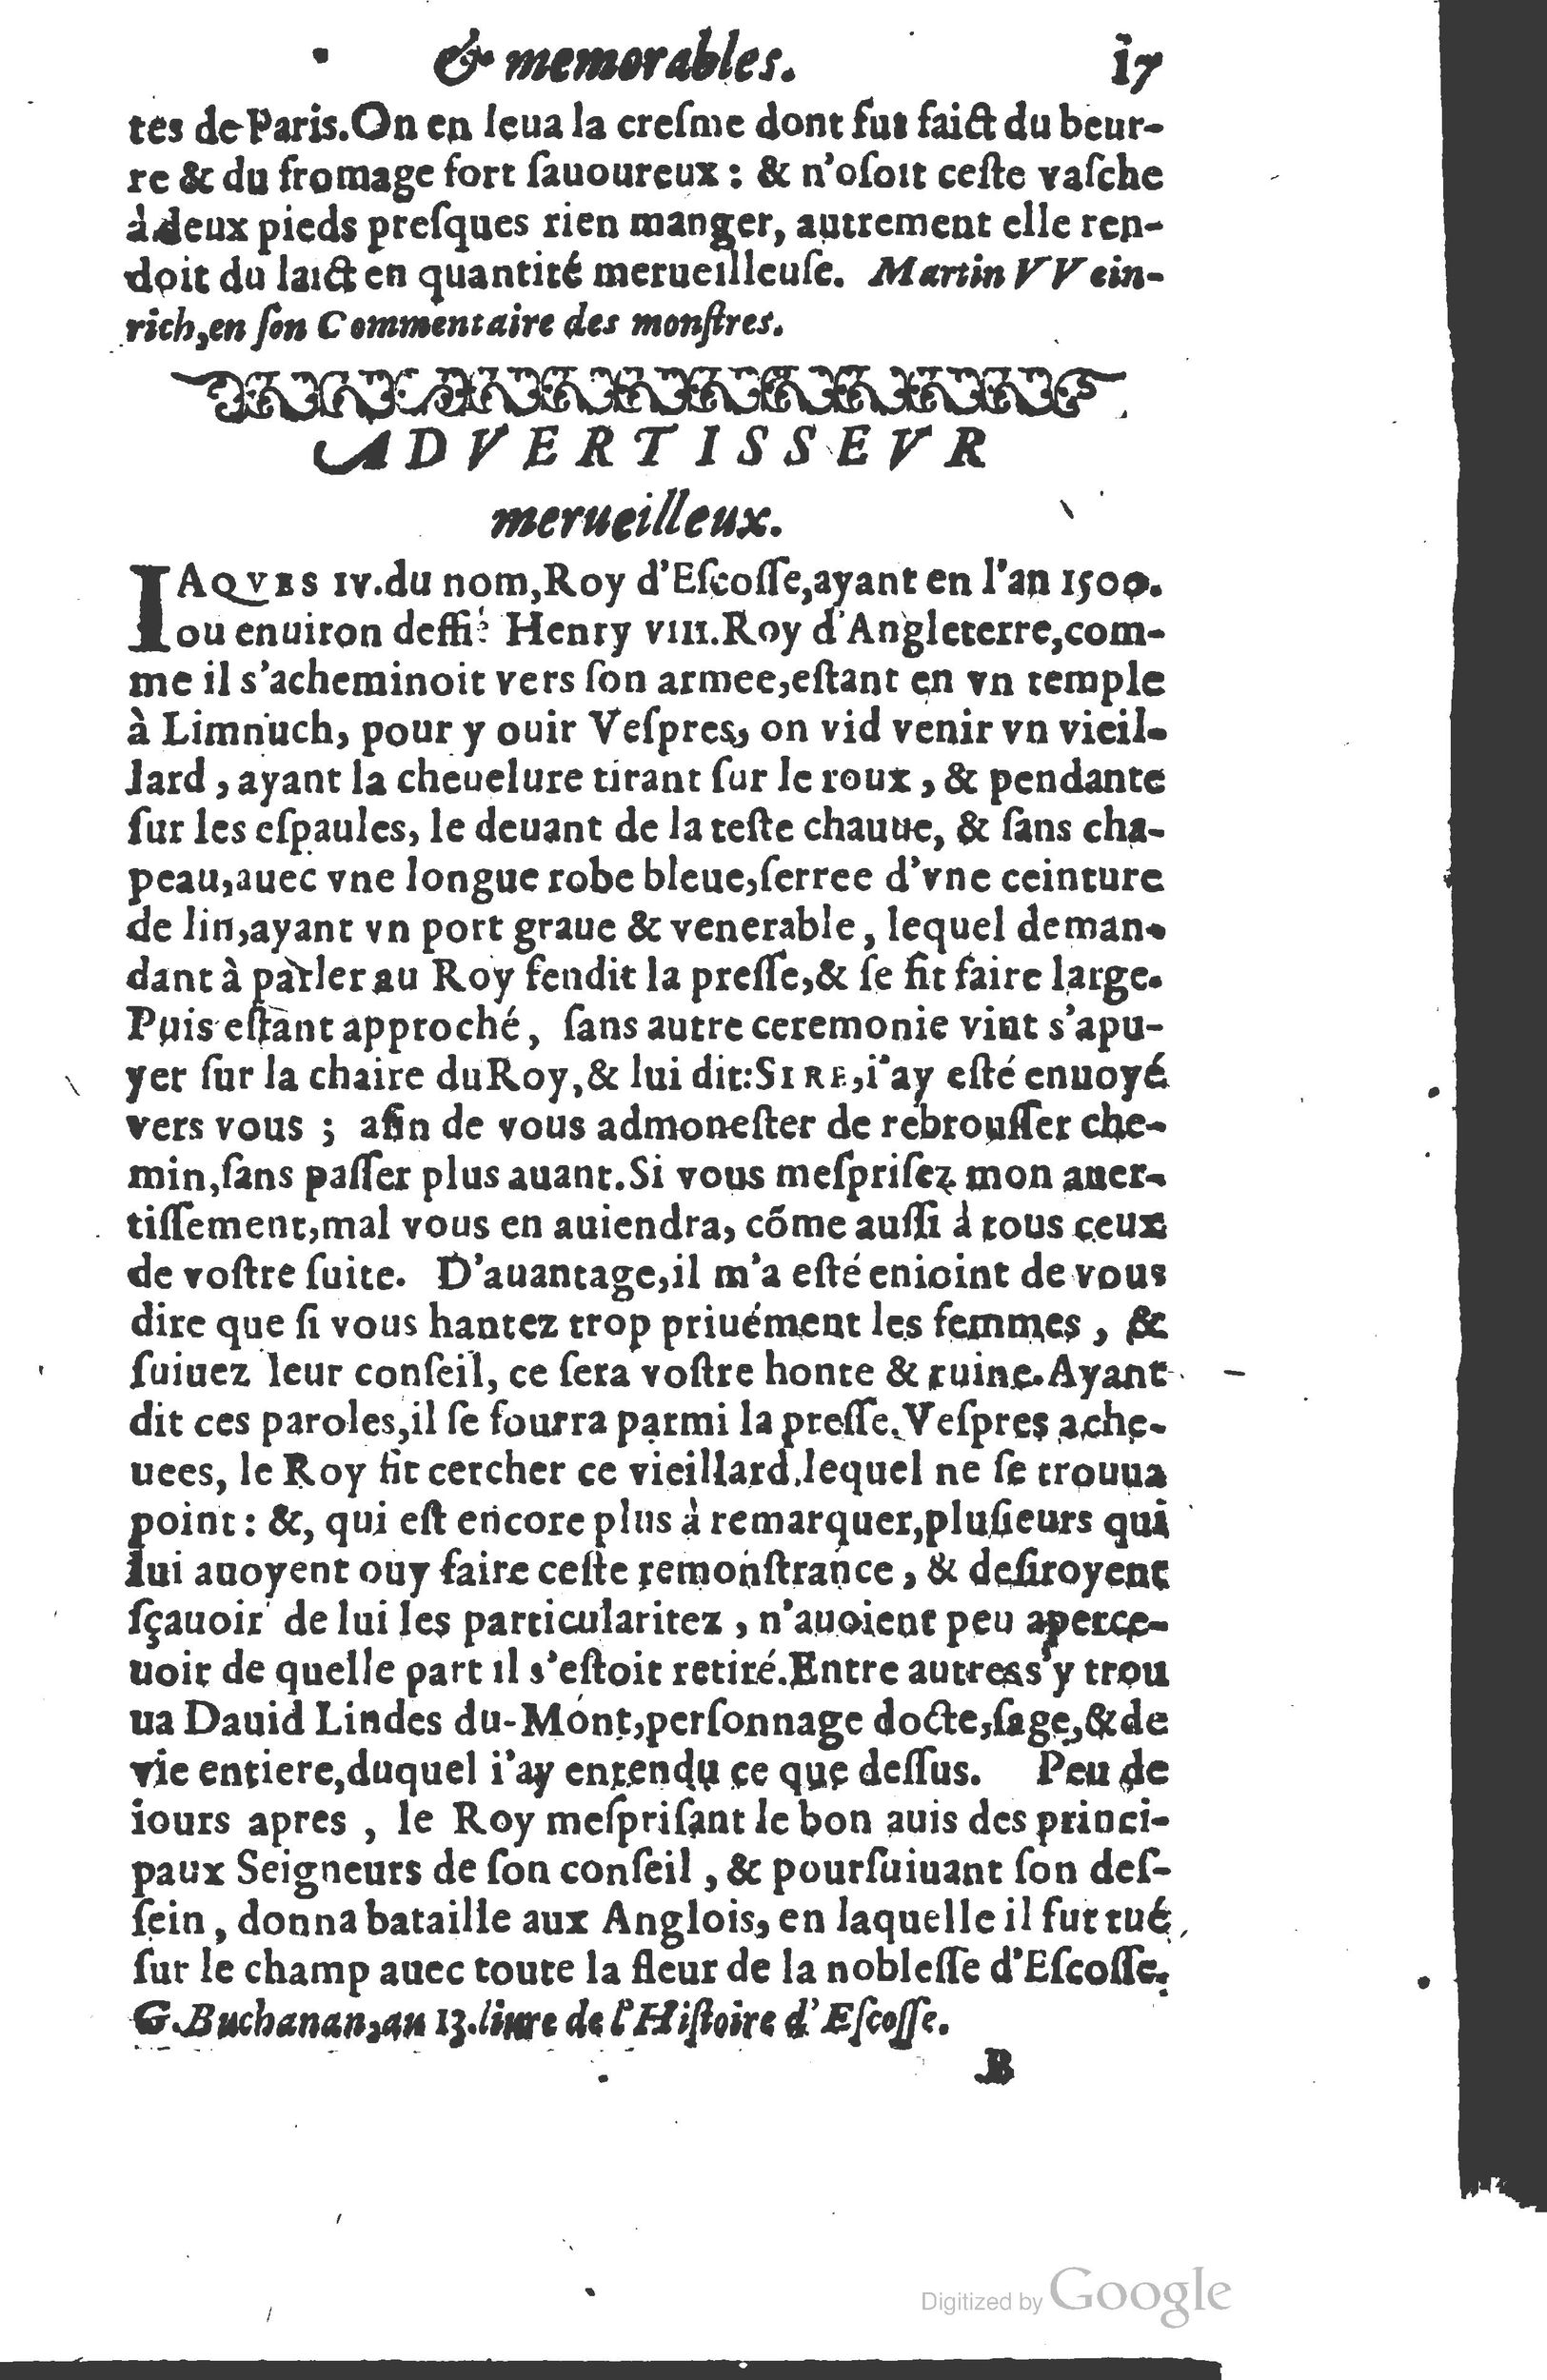 1610 Trésor d’histoires admirables et mémorables de nostre temps Marceau Princeton_Page_0038.jpg